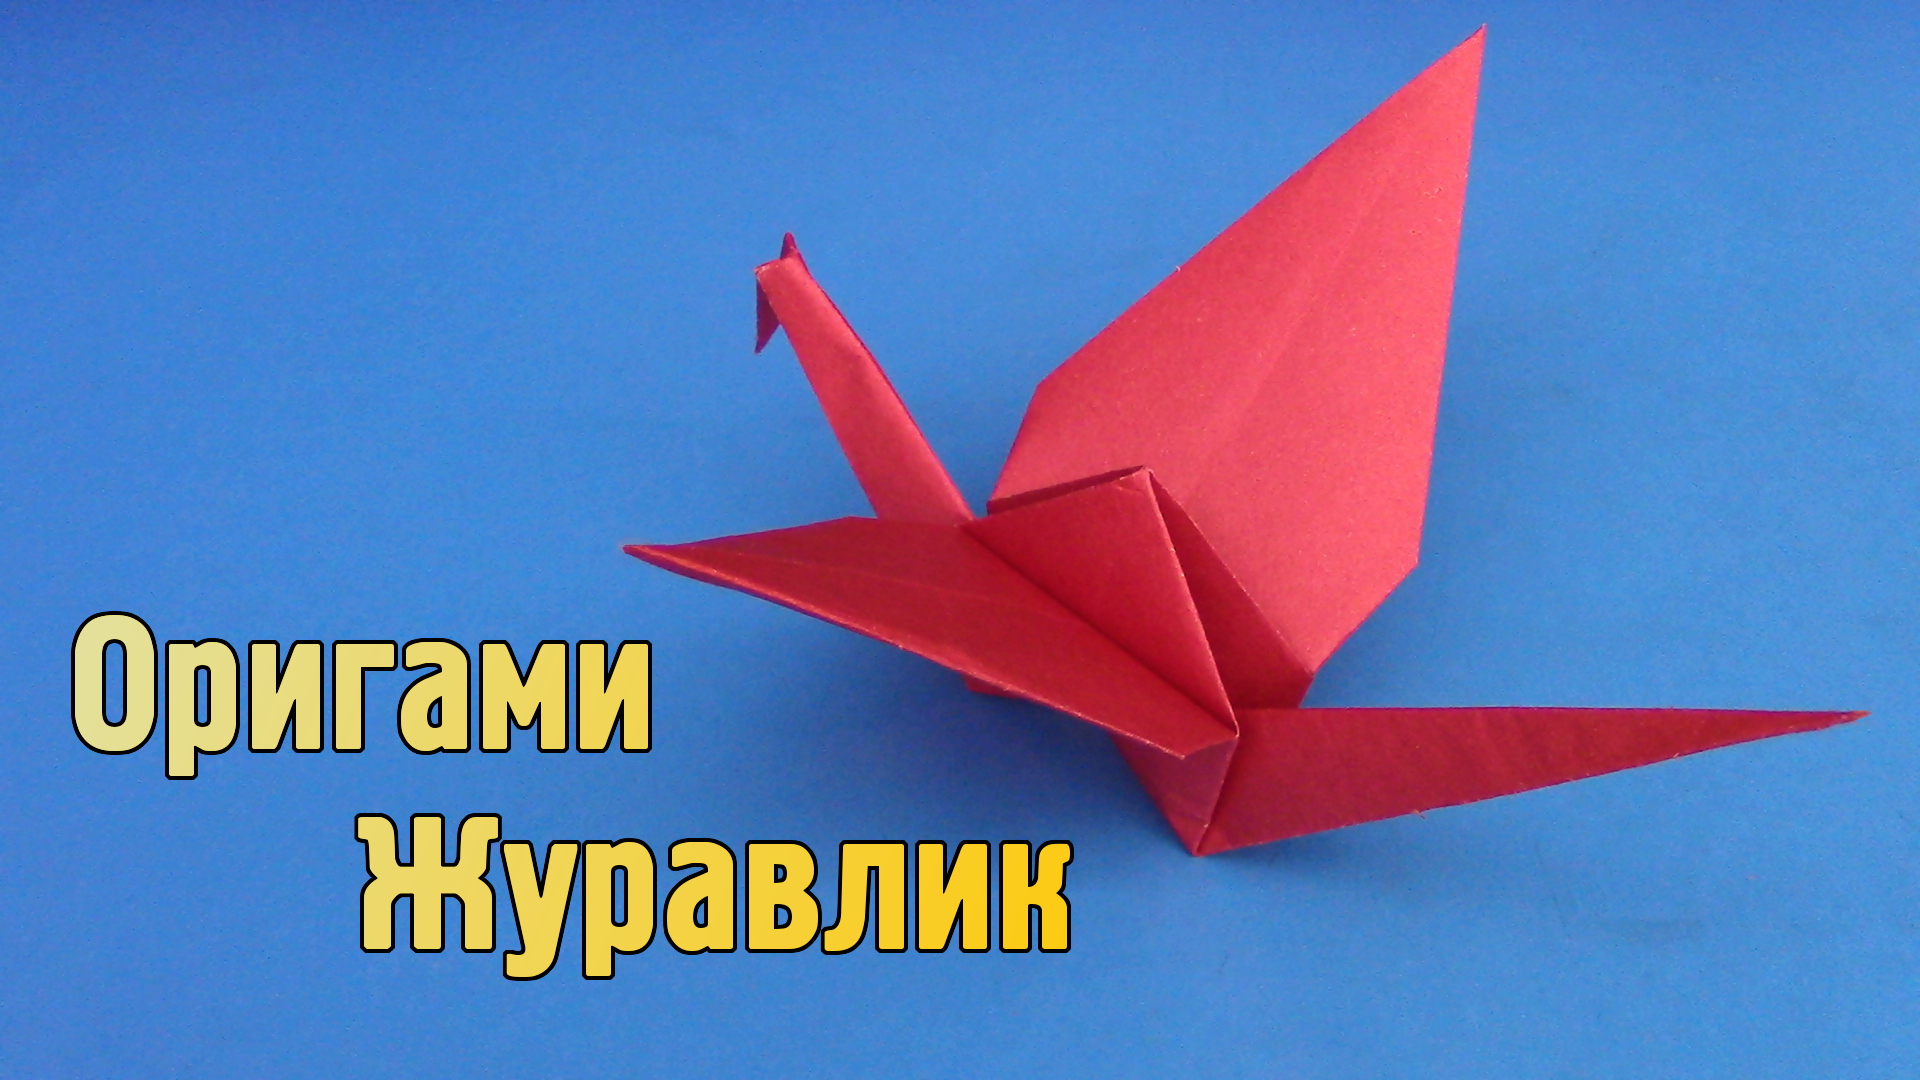 Как сделать птичку из оригами 🚩 сделать из бумаги птичку 🚩 Дизайн